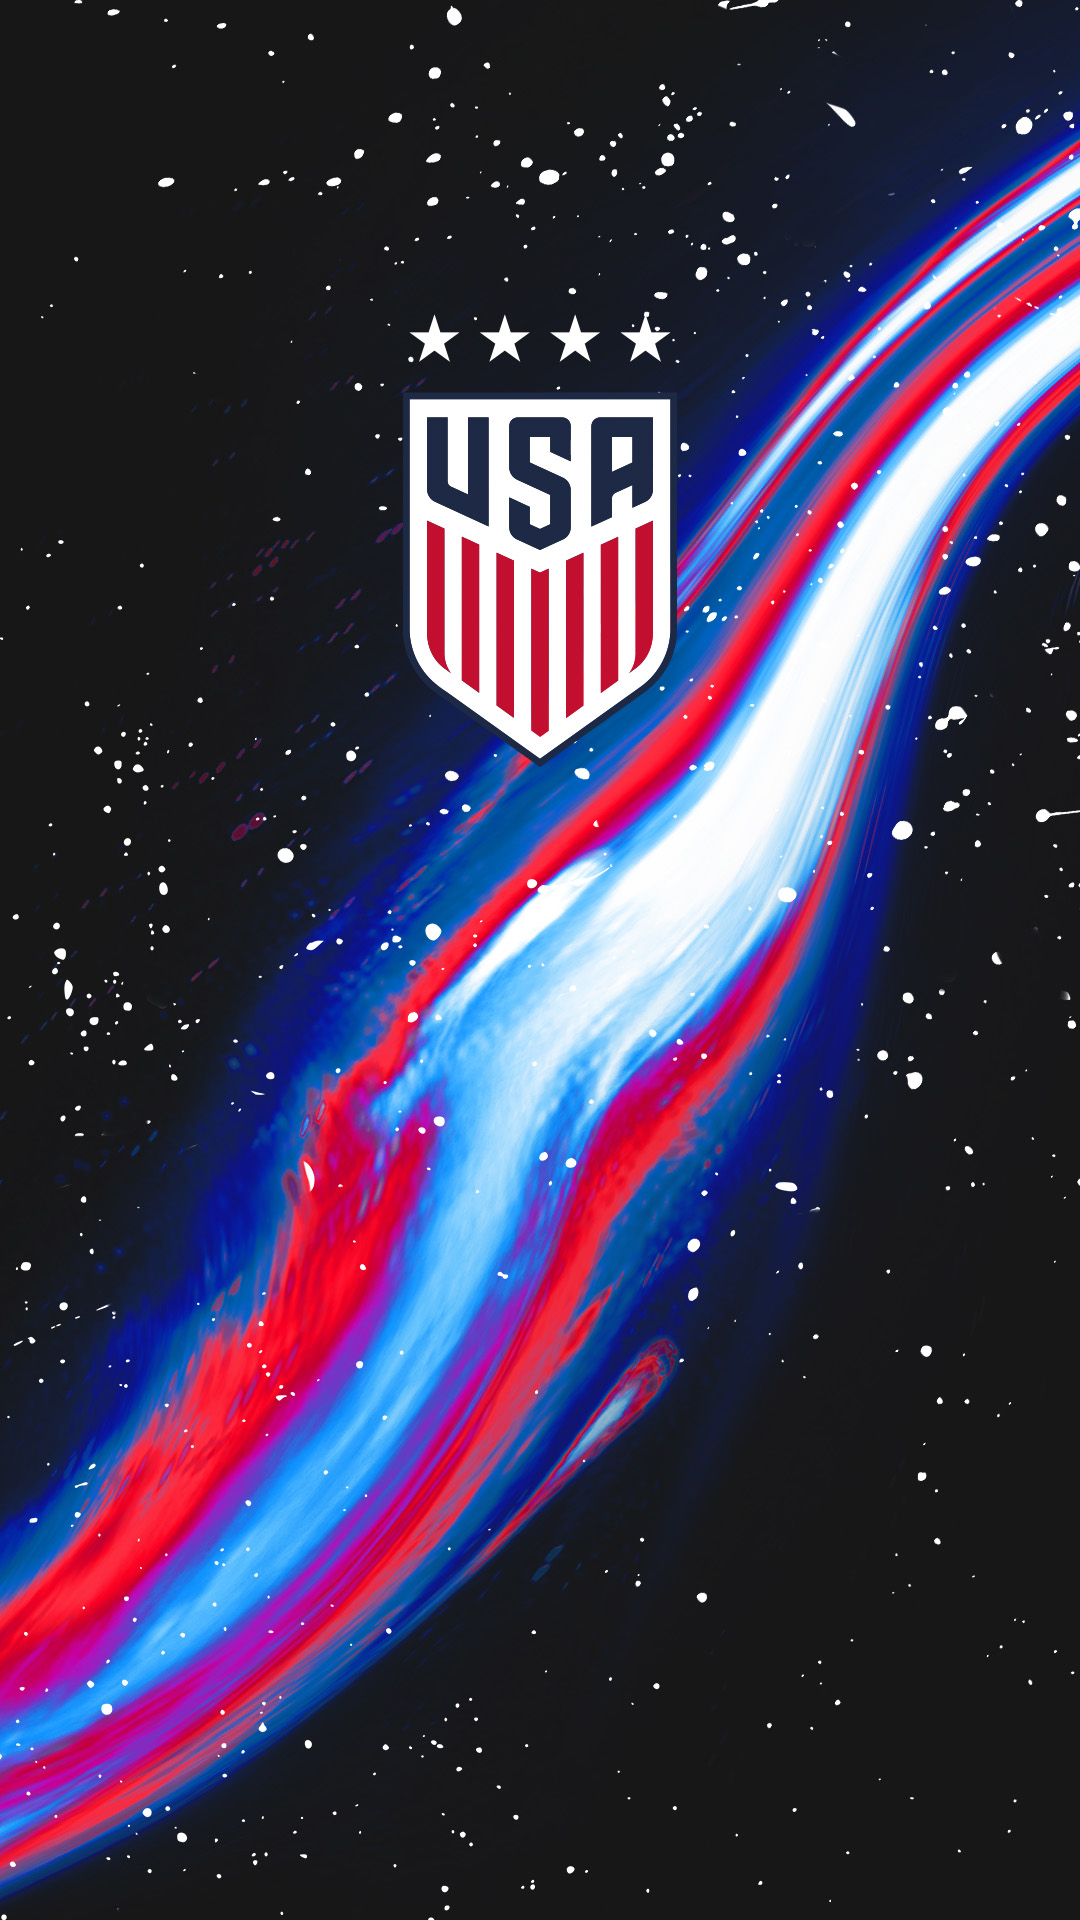 United States Soccer wallpaper by ElnazTajaddod  Download on ZEDGE  23ea